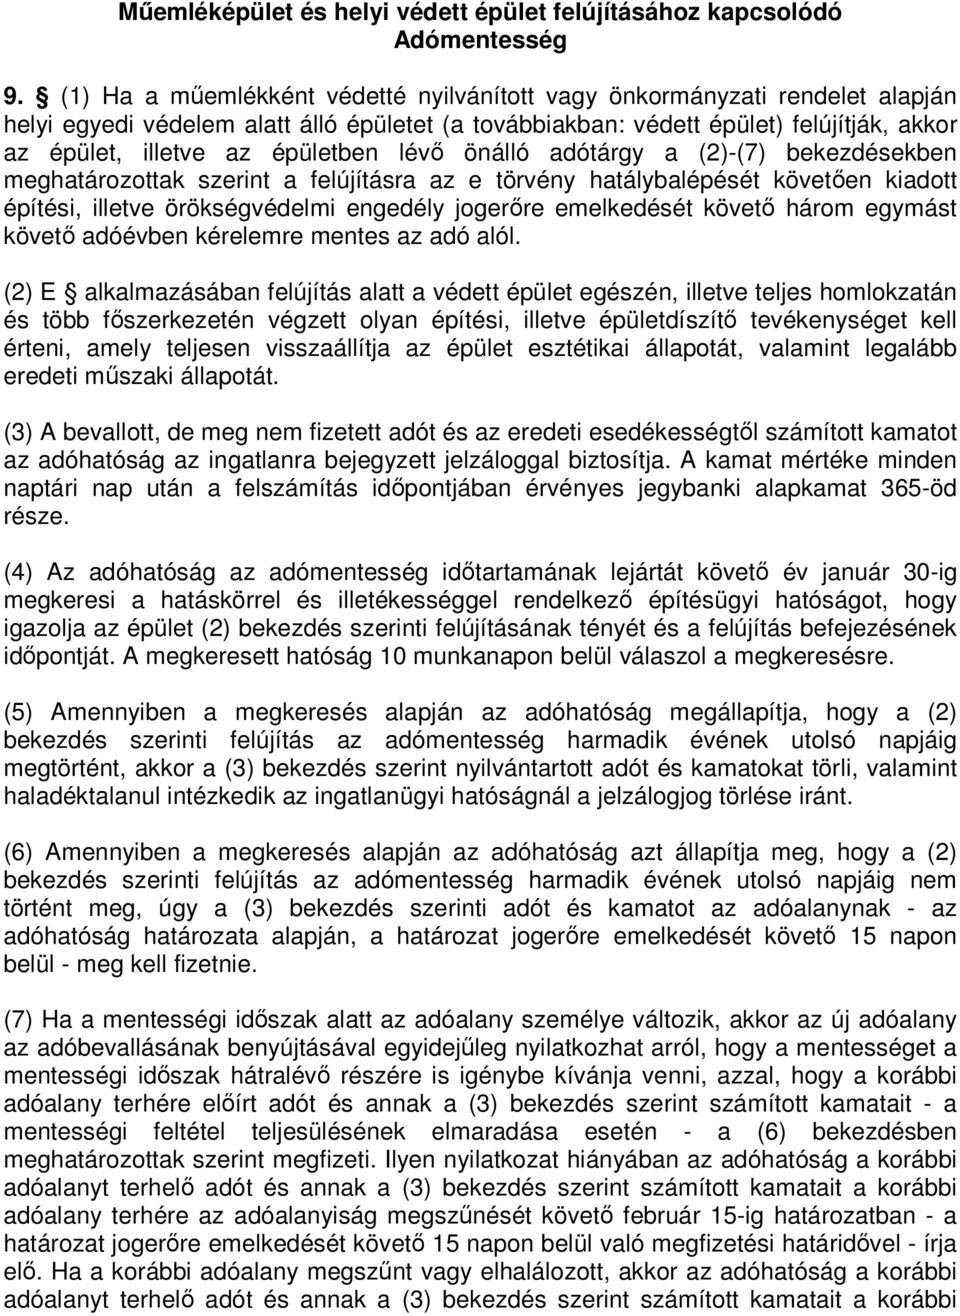 épületben lévı önálló adótárgy a (2)-(7) bekezdésekben meghatározottak szerint a felújításra az e törvény hatálybalépését követıen kiadott építési, illetve örökségvédelmi engedély jogerıre